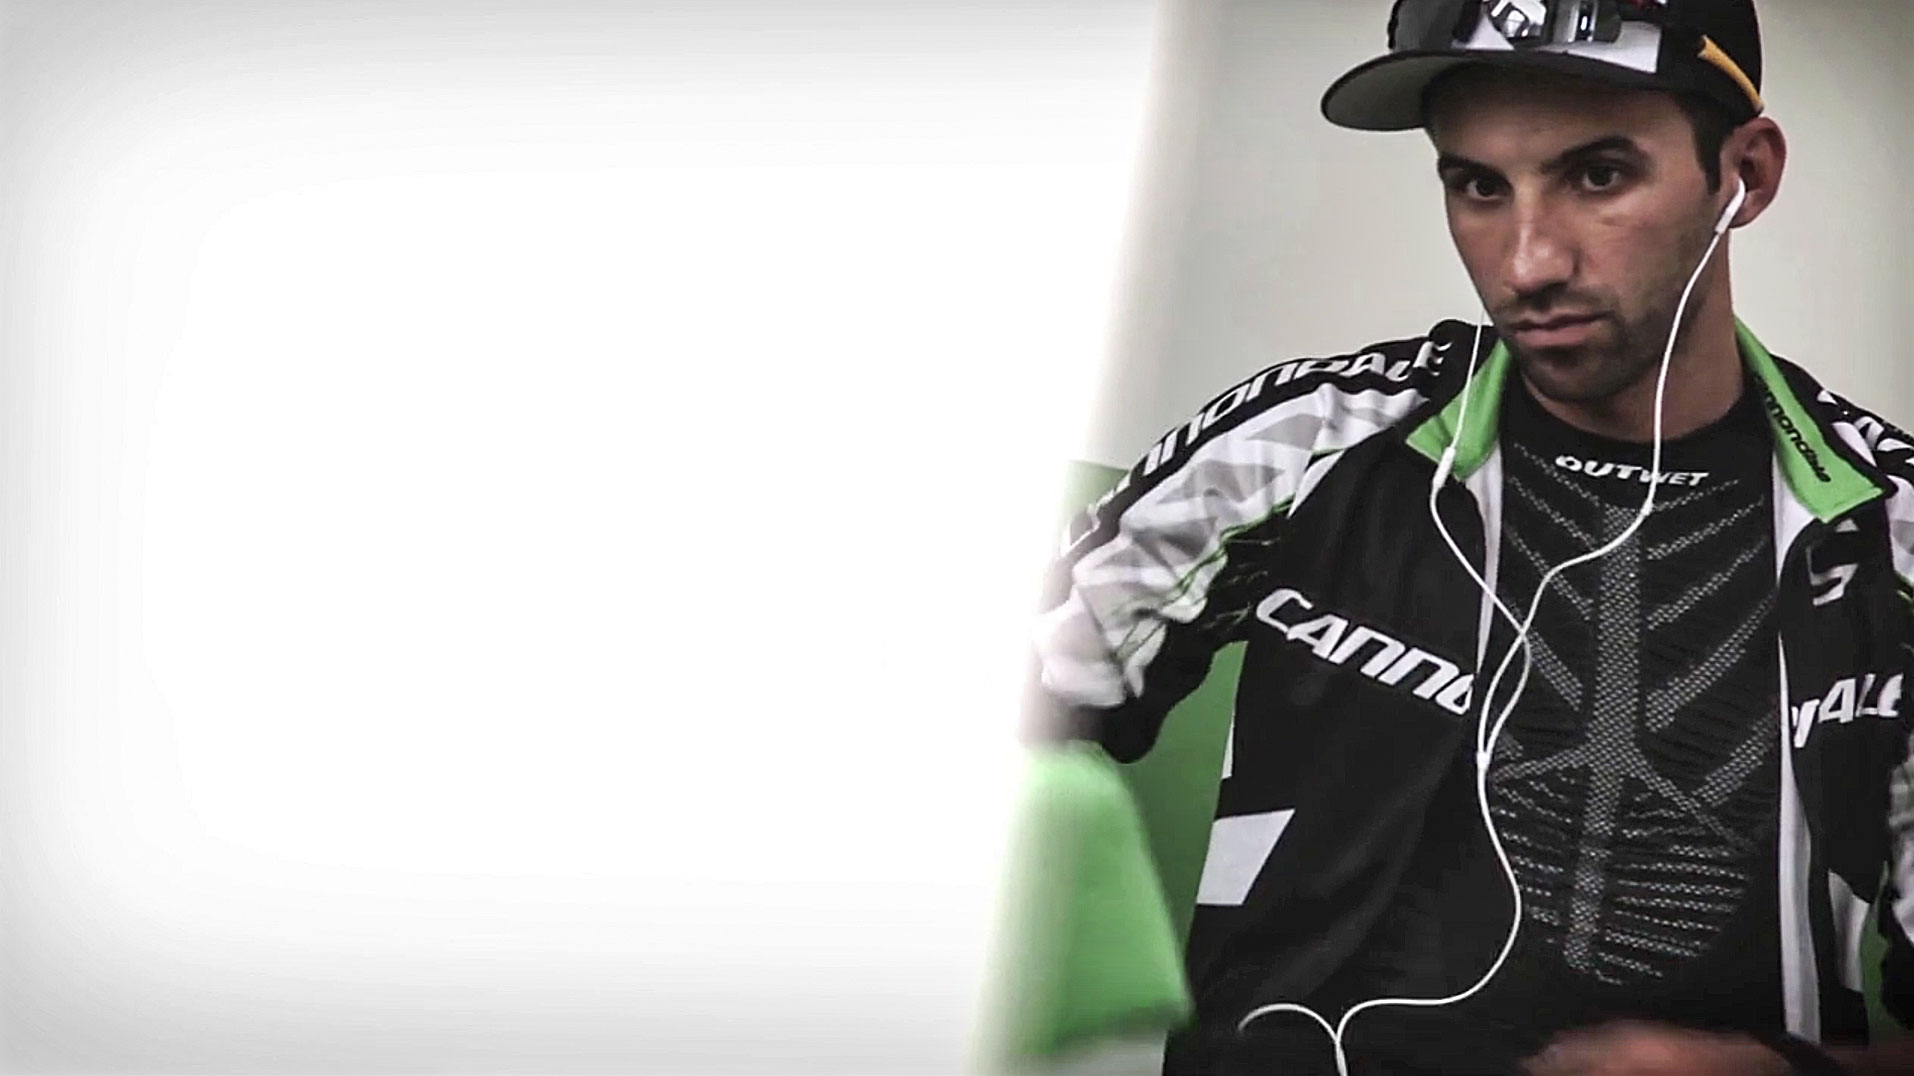 75a produziert das Video, das den Mountainbike-Profi hinter den Kulissen zeigt